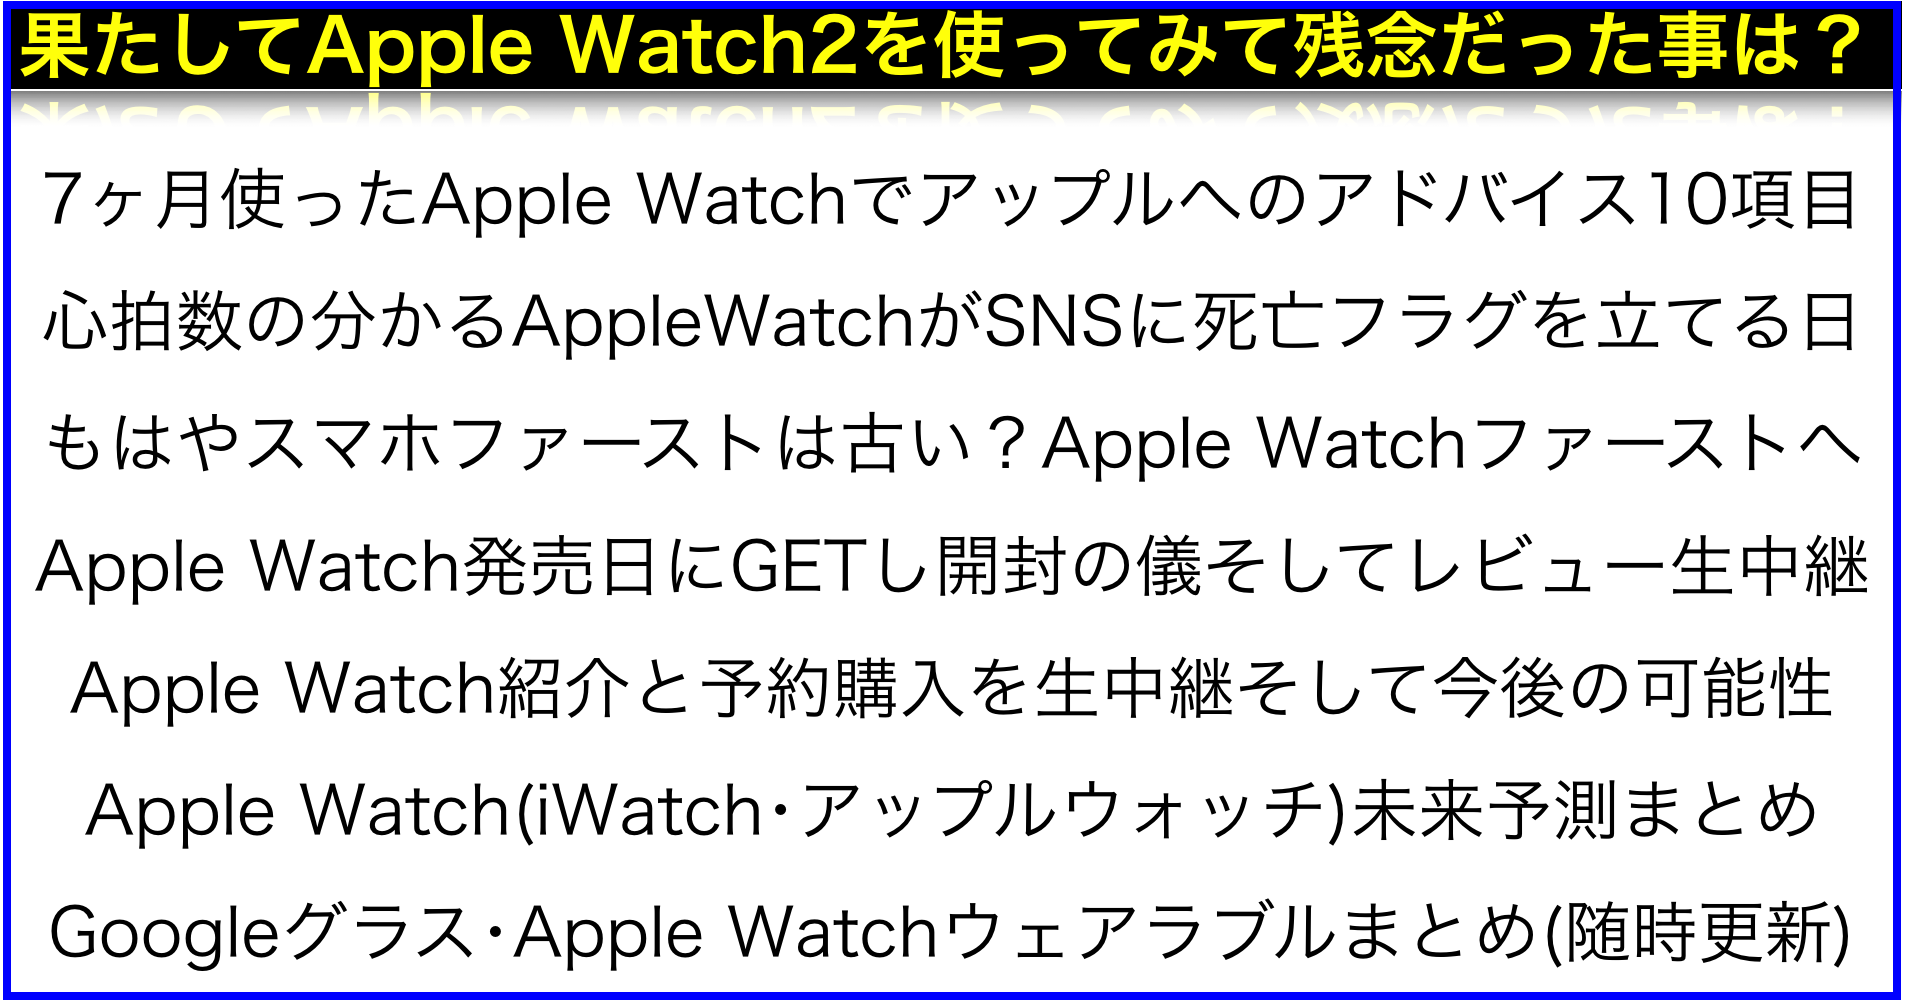 Apple Watch2が届いたので速攻でレビューしたが残念な点